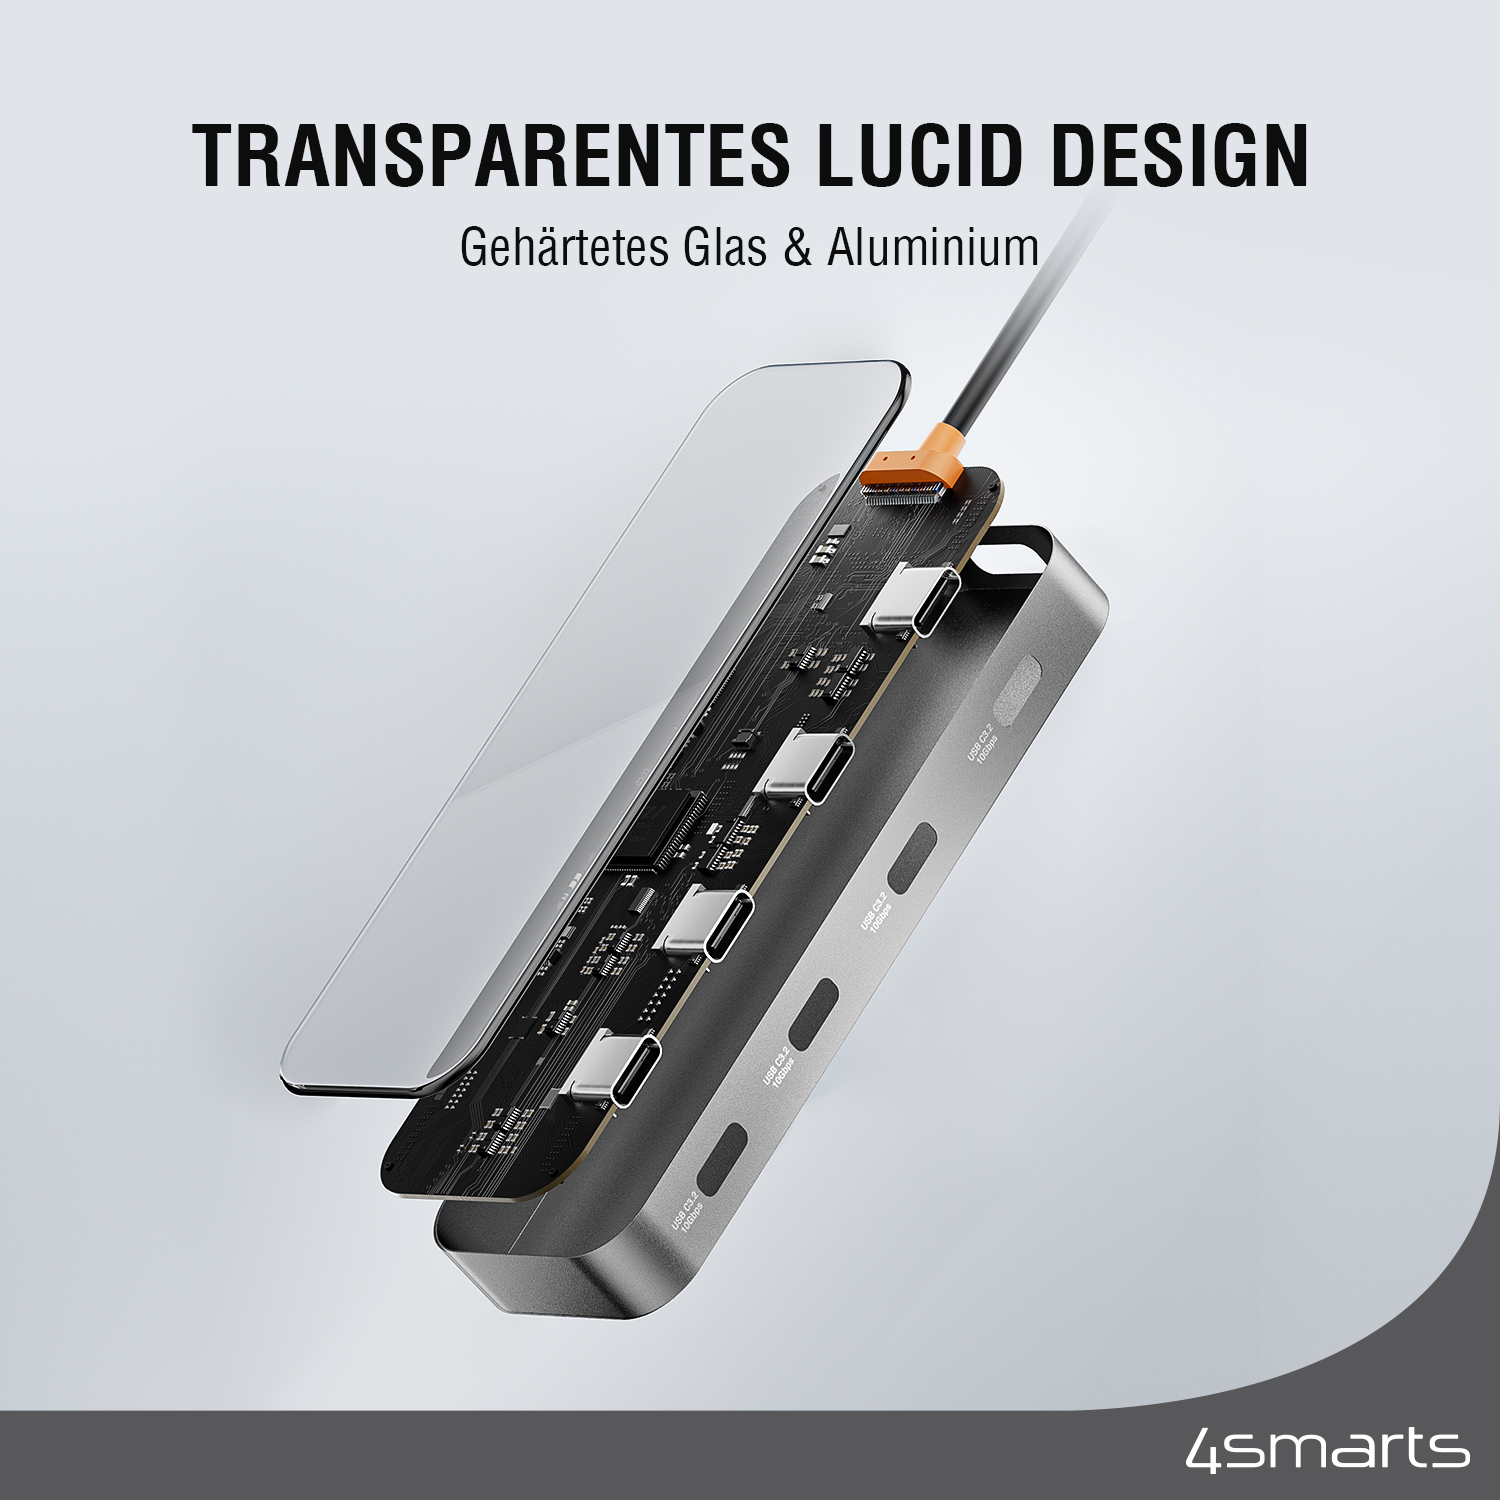 Unser 4smarts USB Type C Hub mit transparentem Design ist aus gehärtetes Glas und Aluminium gemacht.